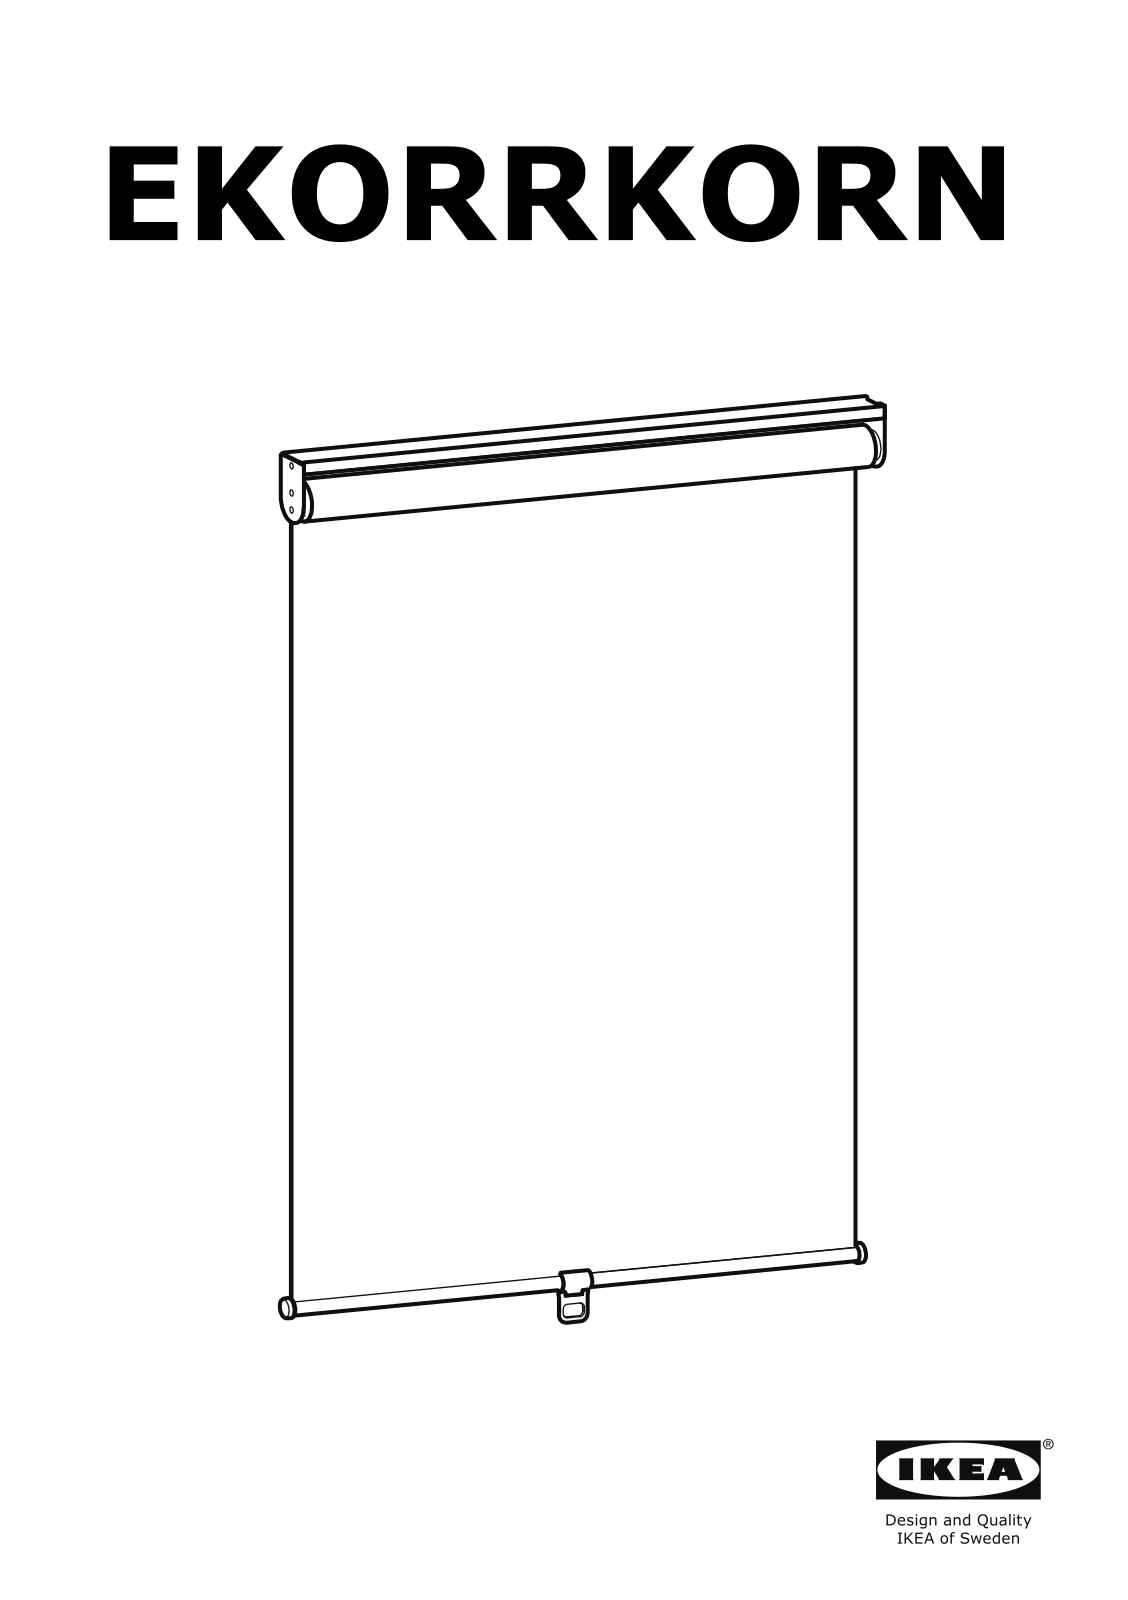 IKEA EKORRKORN User Manual